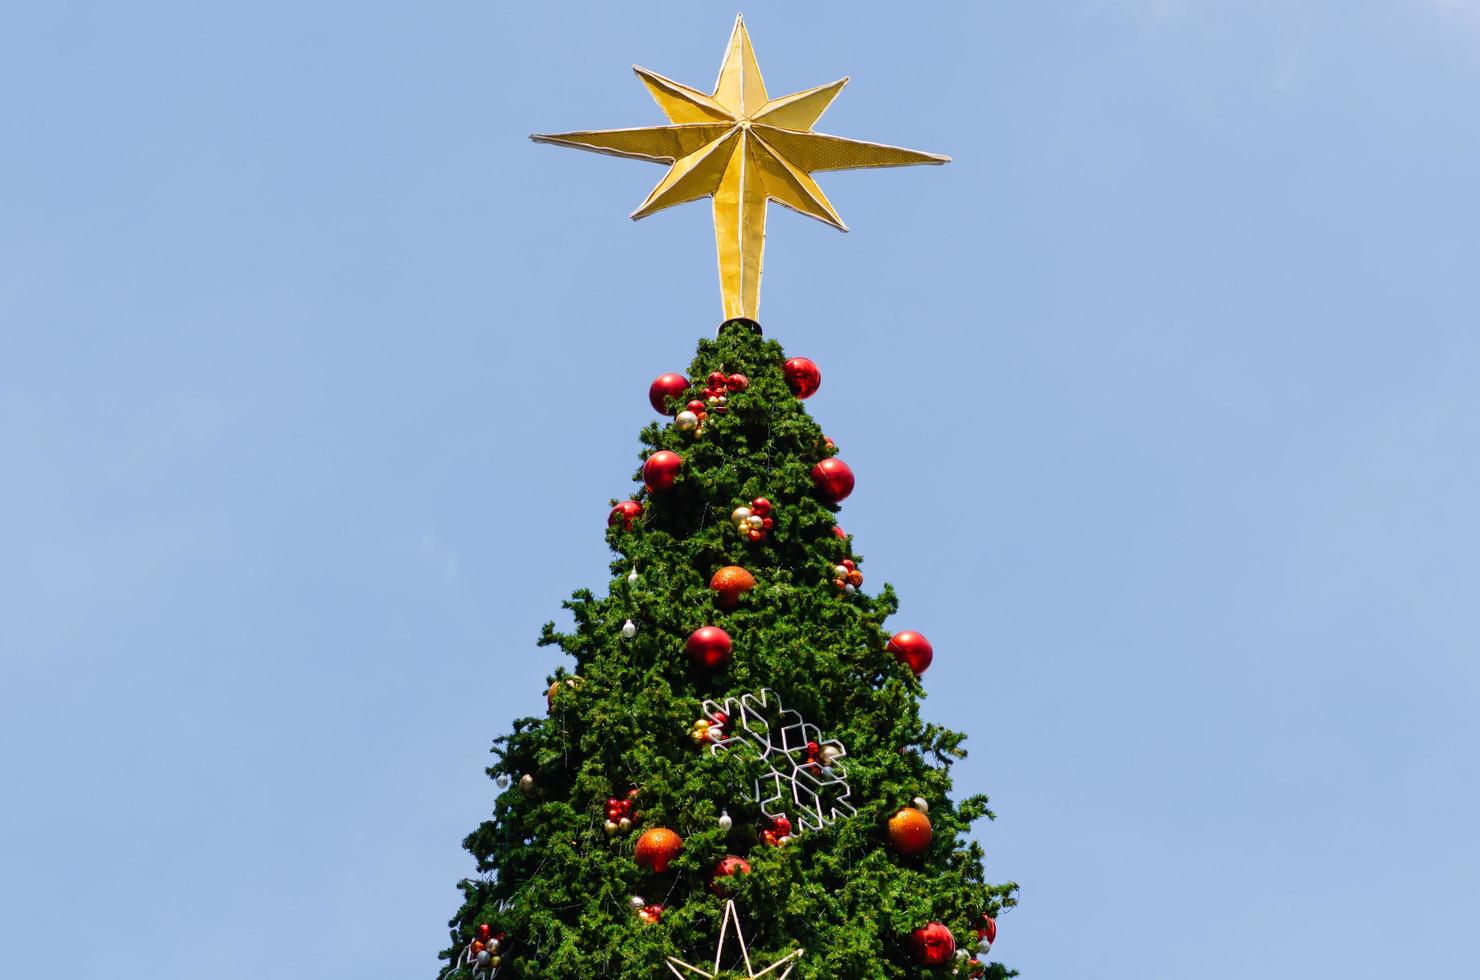 Sternverzierung setzt auf die Spitze des großen Weihnachtsbaums mit bunten Kugeln und anderen Verzierungen. foto